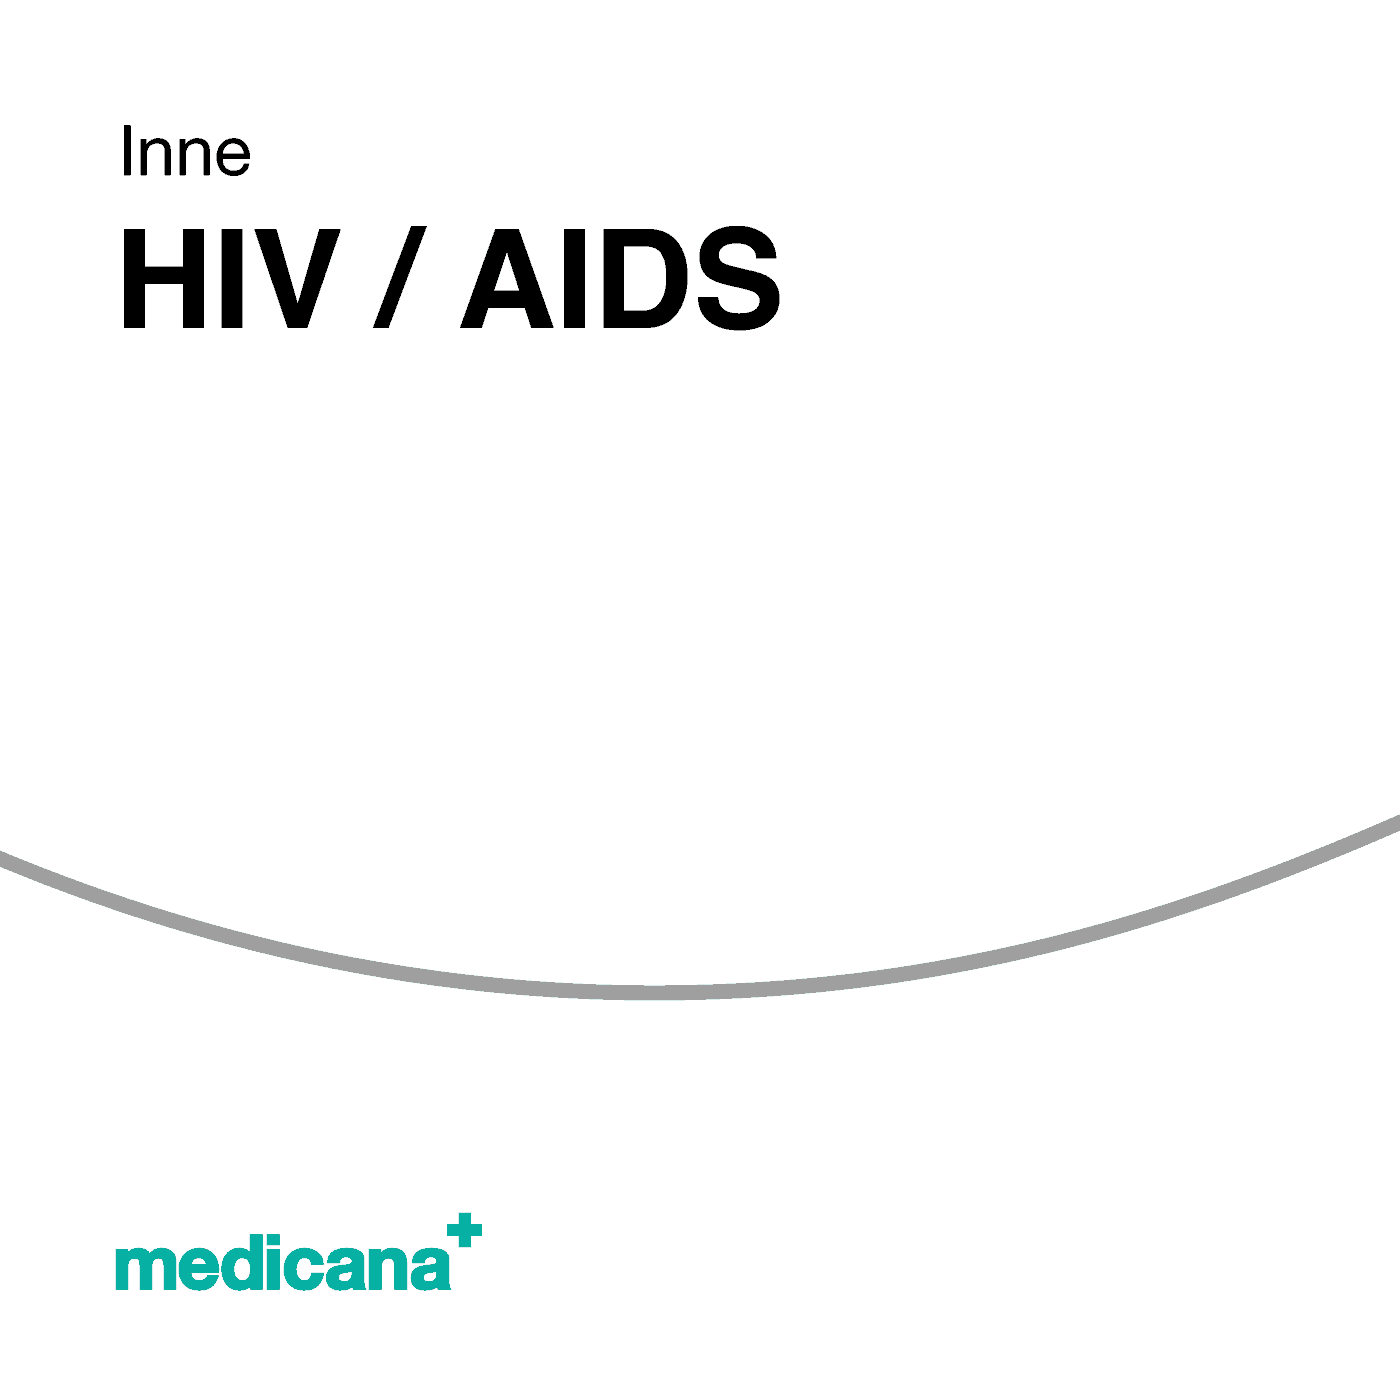 Grafika, białe tło szarą kreską, czarnym napisem Inne - HIV / AIDS i logo Medicana Centrum Terapii Medyczna Marihuana w lewym dolnym rogu.